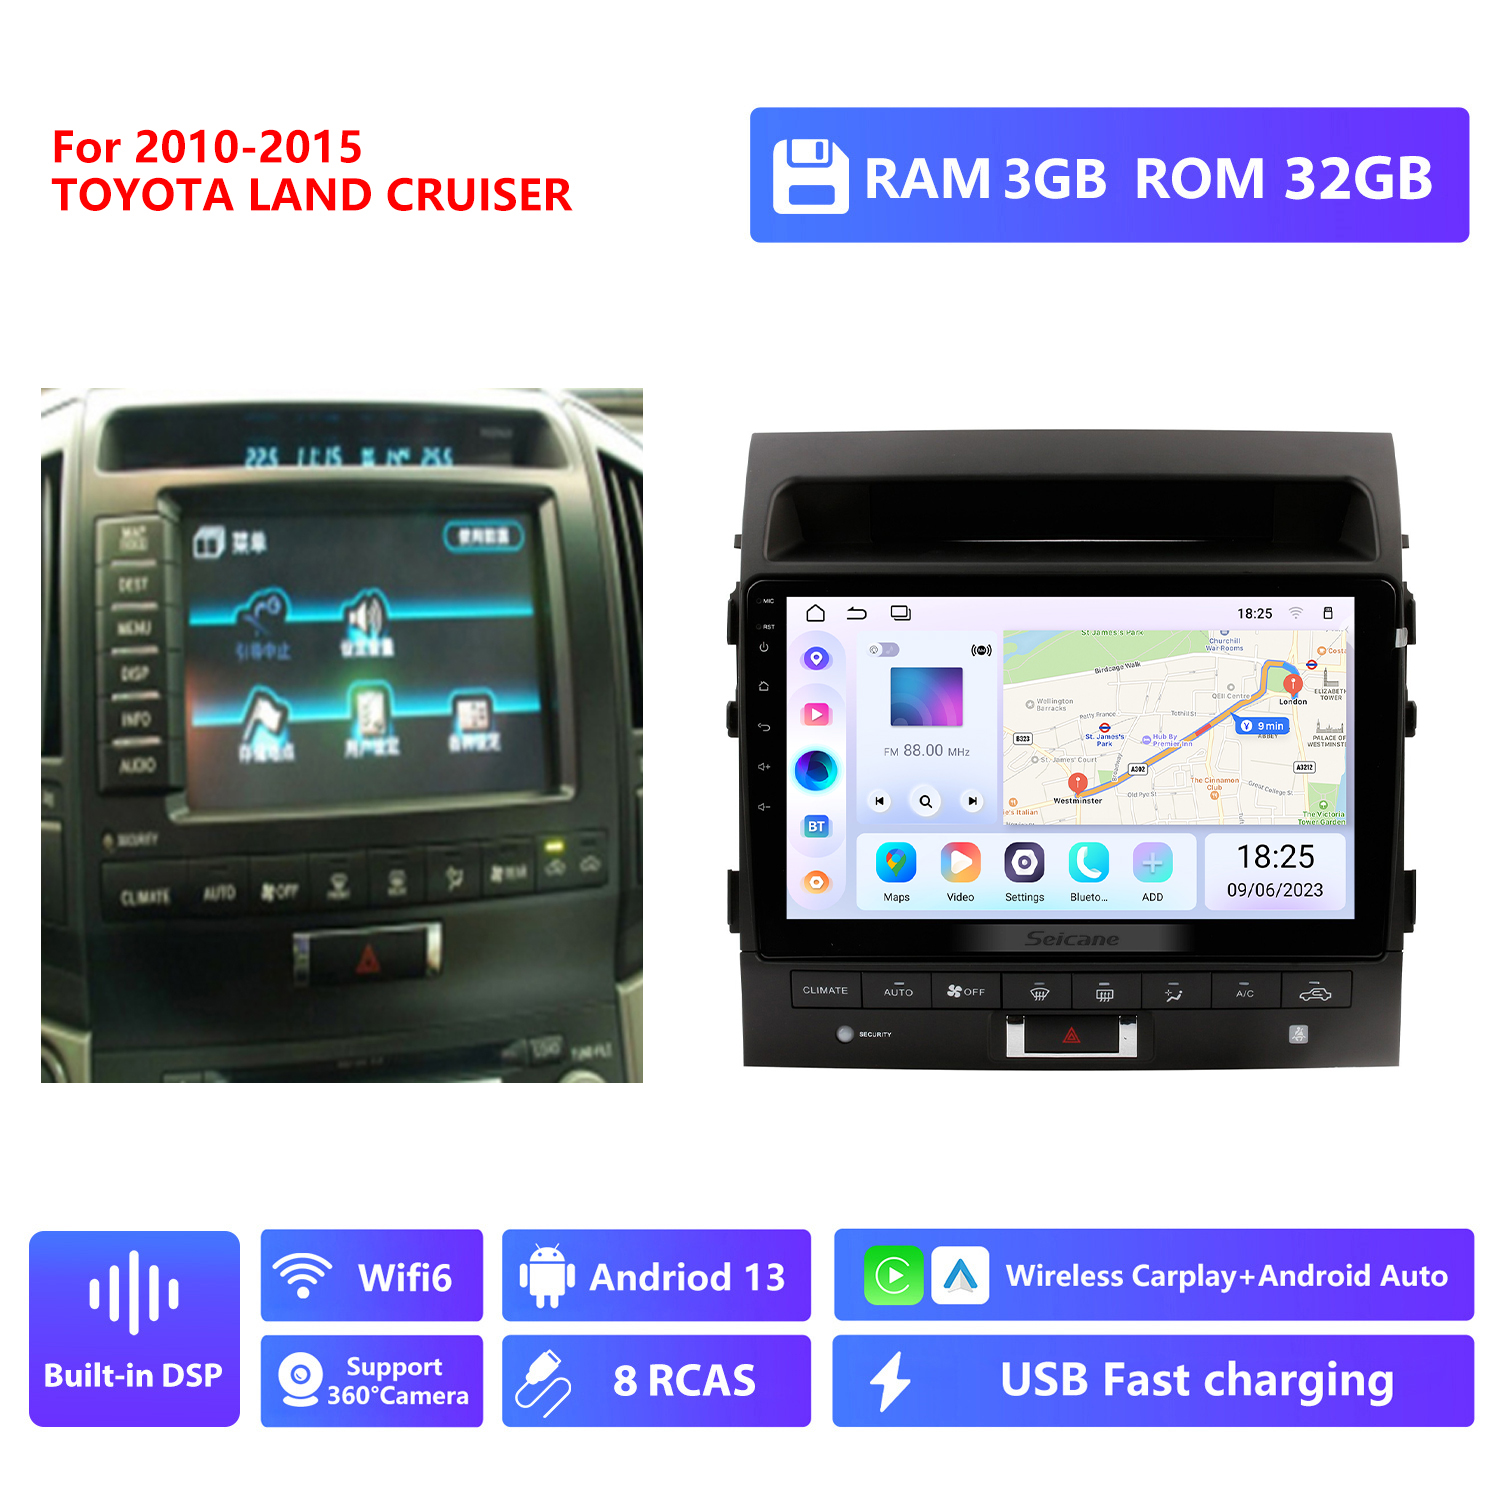 RAM 3G,ROM 32G,2010-2015 year